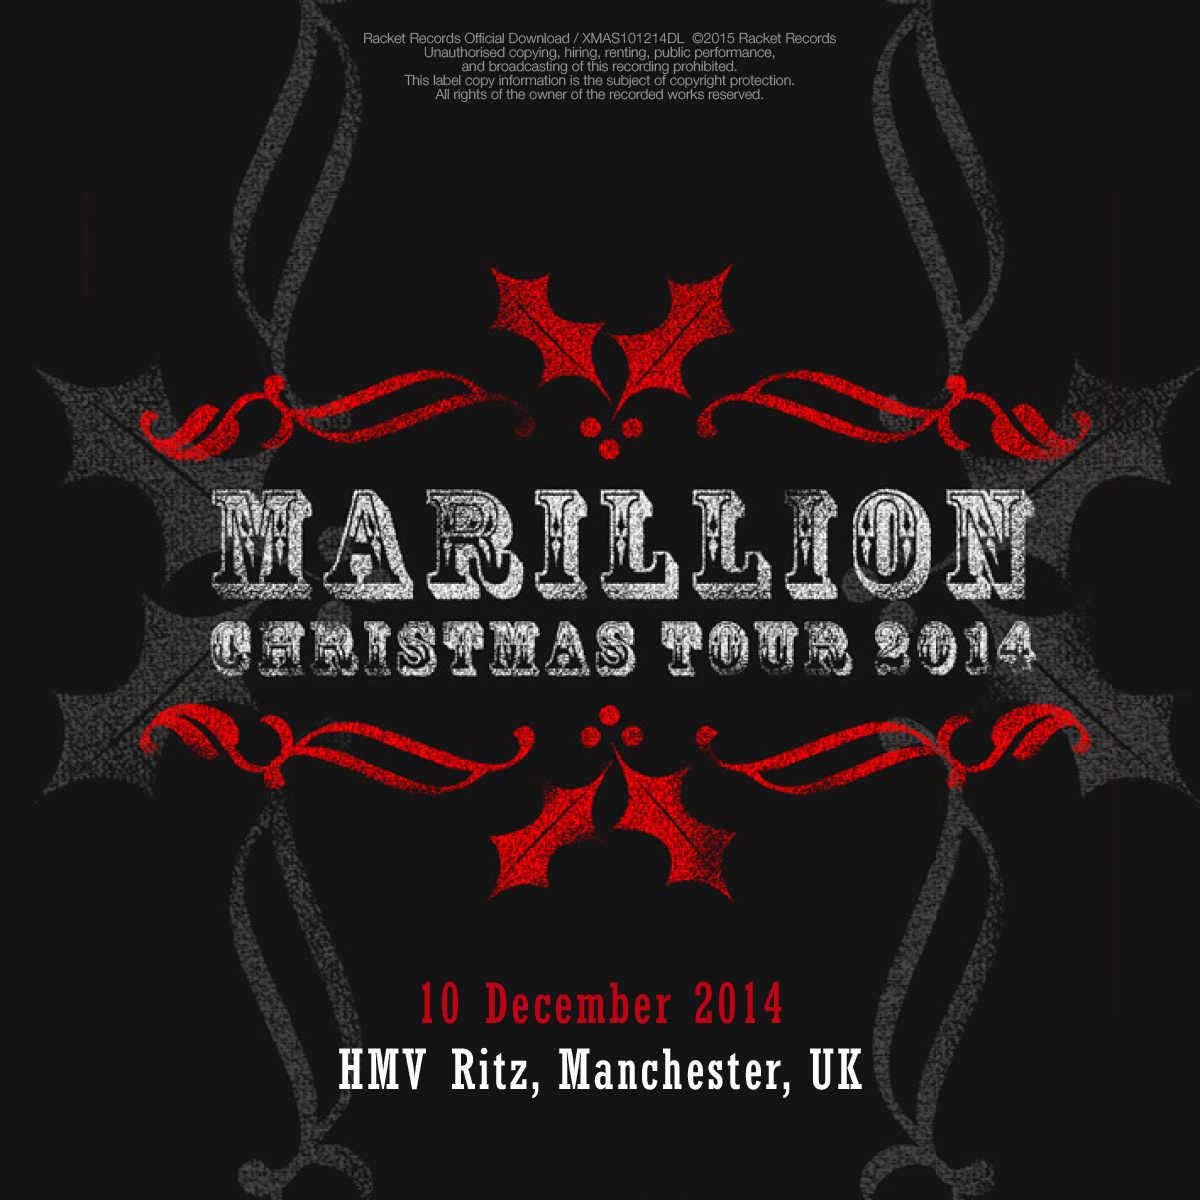 HMV Ritz, Manchester, UK<br>10th December 2014 Live Download 320kbps